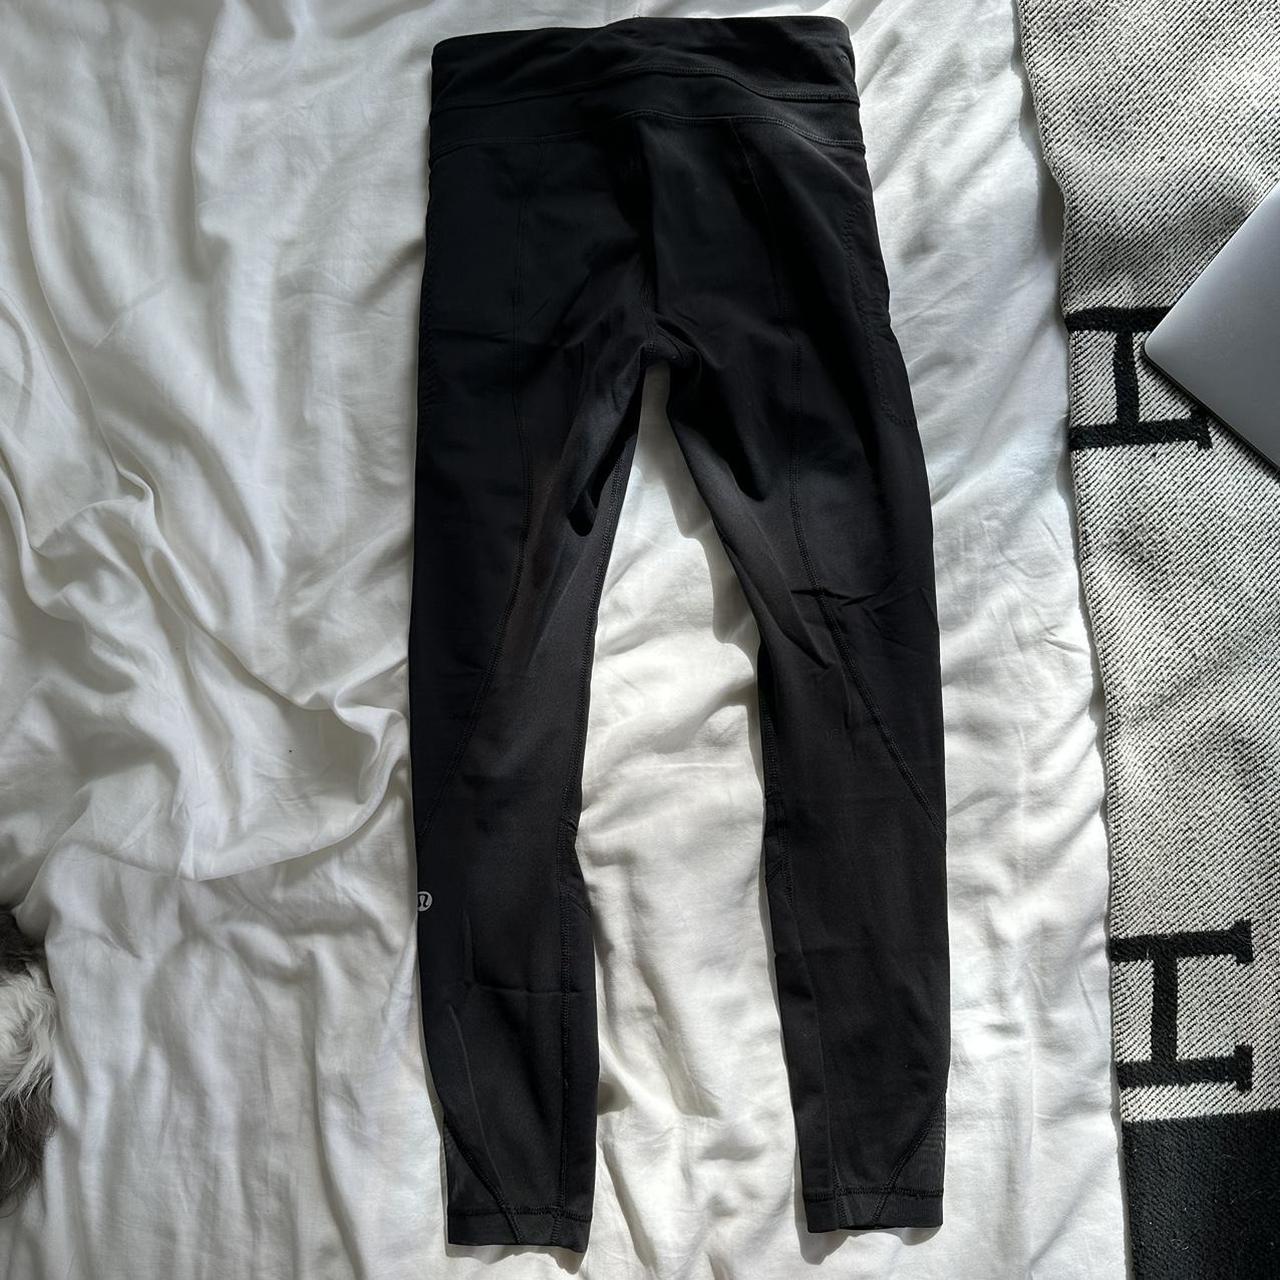 Lululemon leggings with mesh / zipper / pocket - Depop